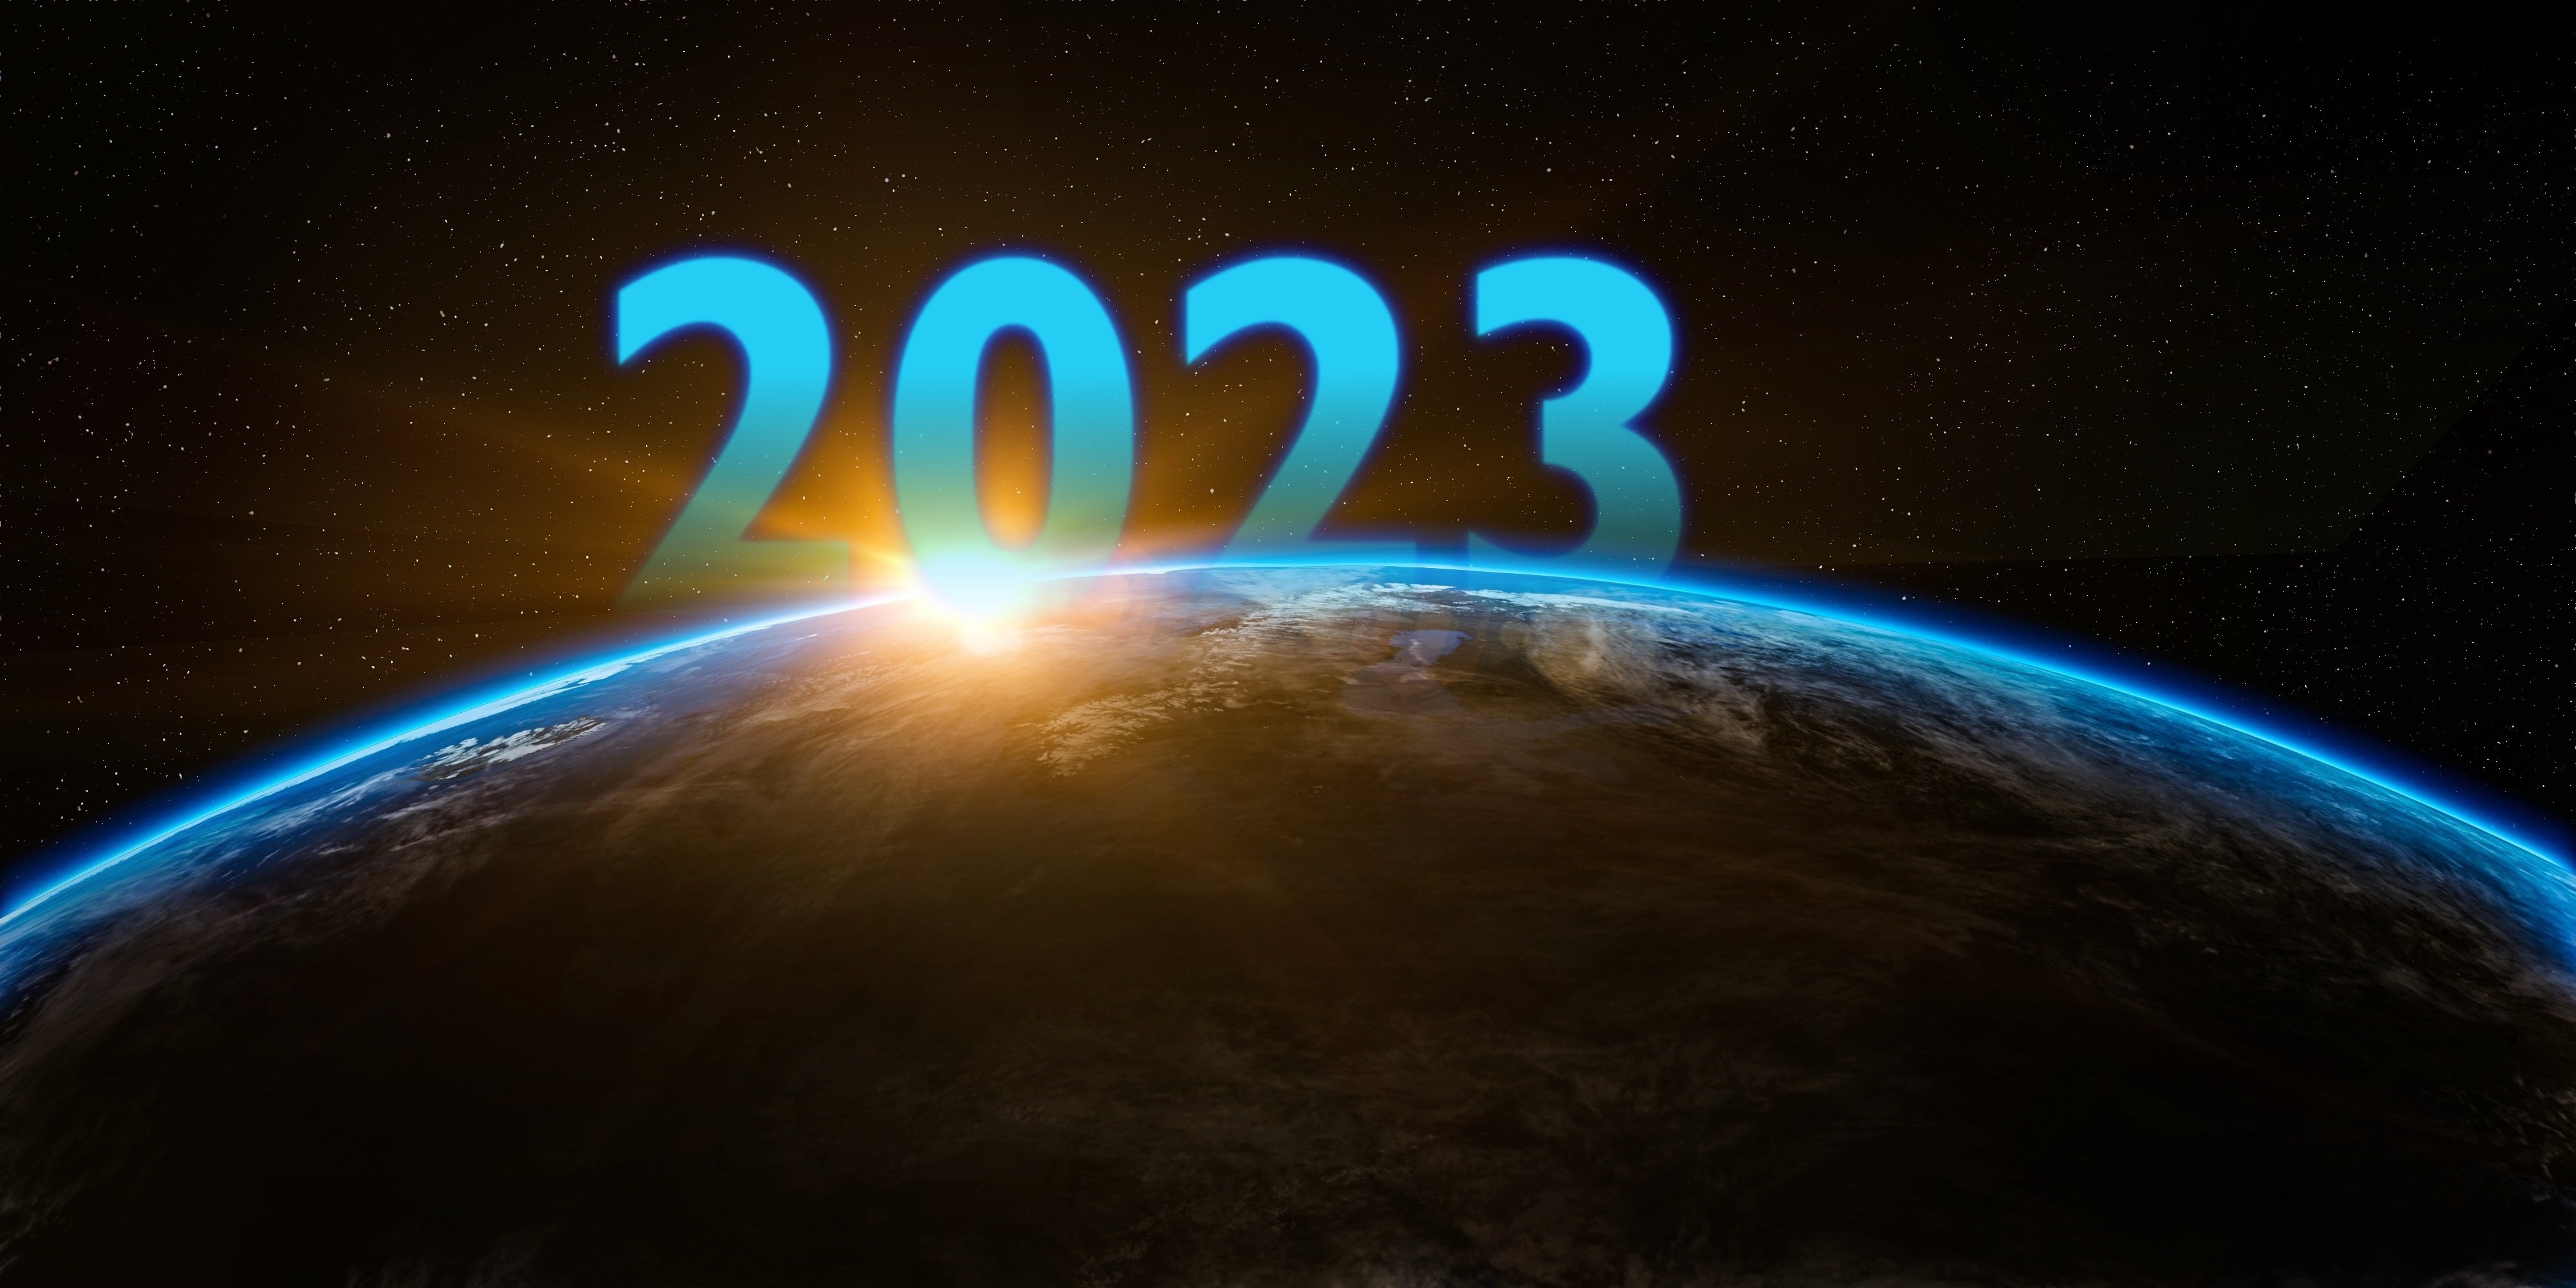 Картинка 2023. Обои на рабочий стол 2023 год. Новогодние цифры 2023 года. 2023 Год обои на рабочий стол компьютера. Обои на рабочий стол новогодние 2023.